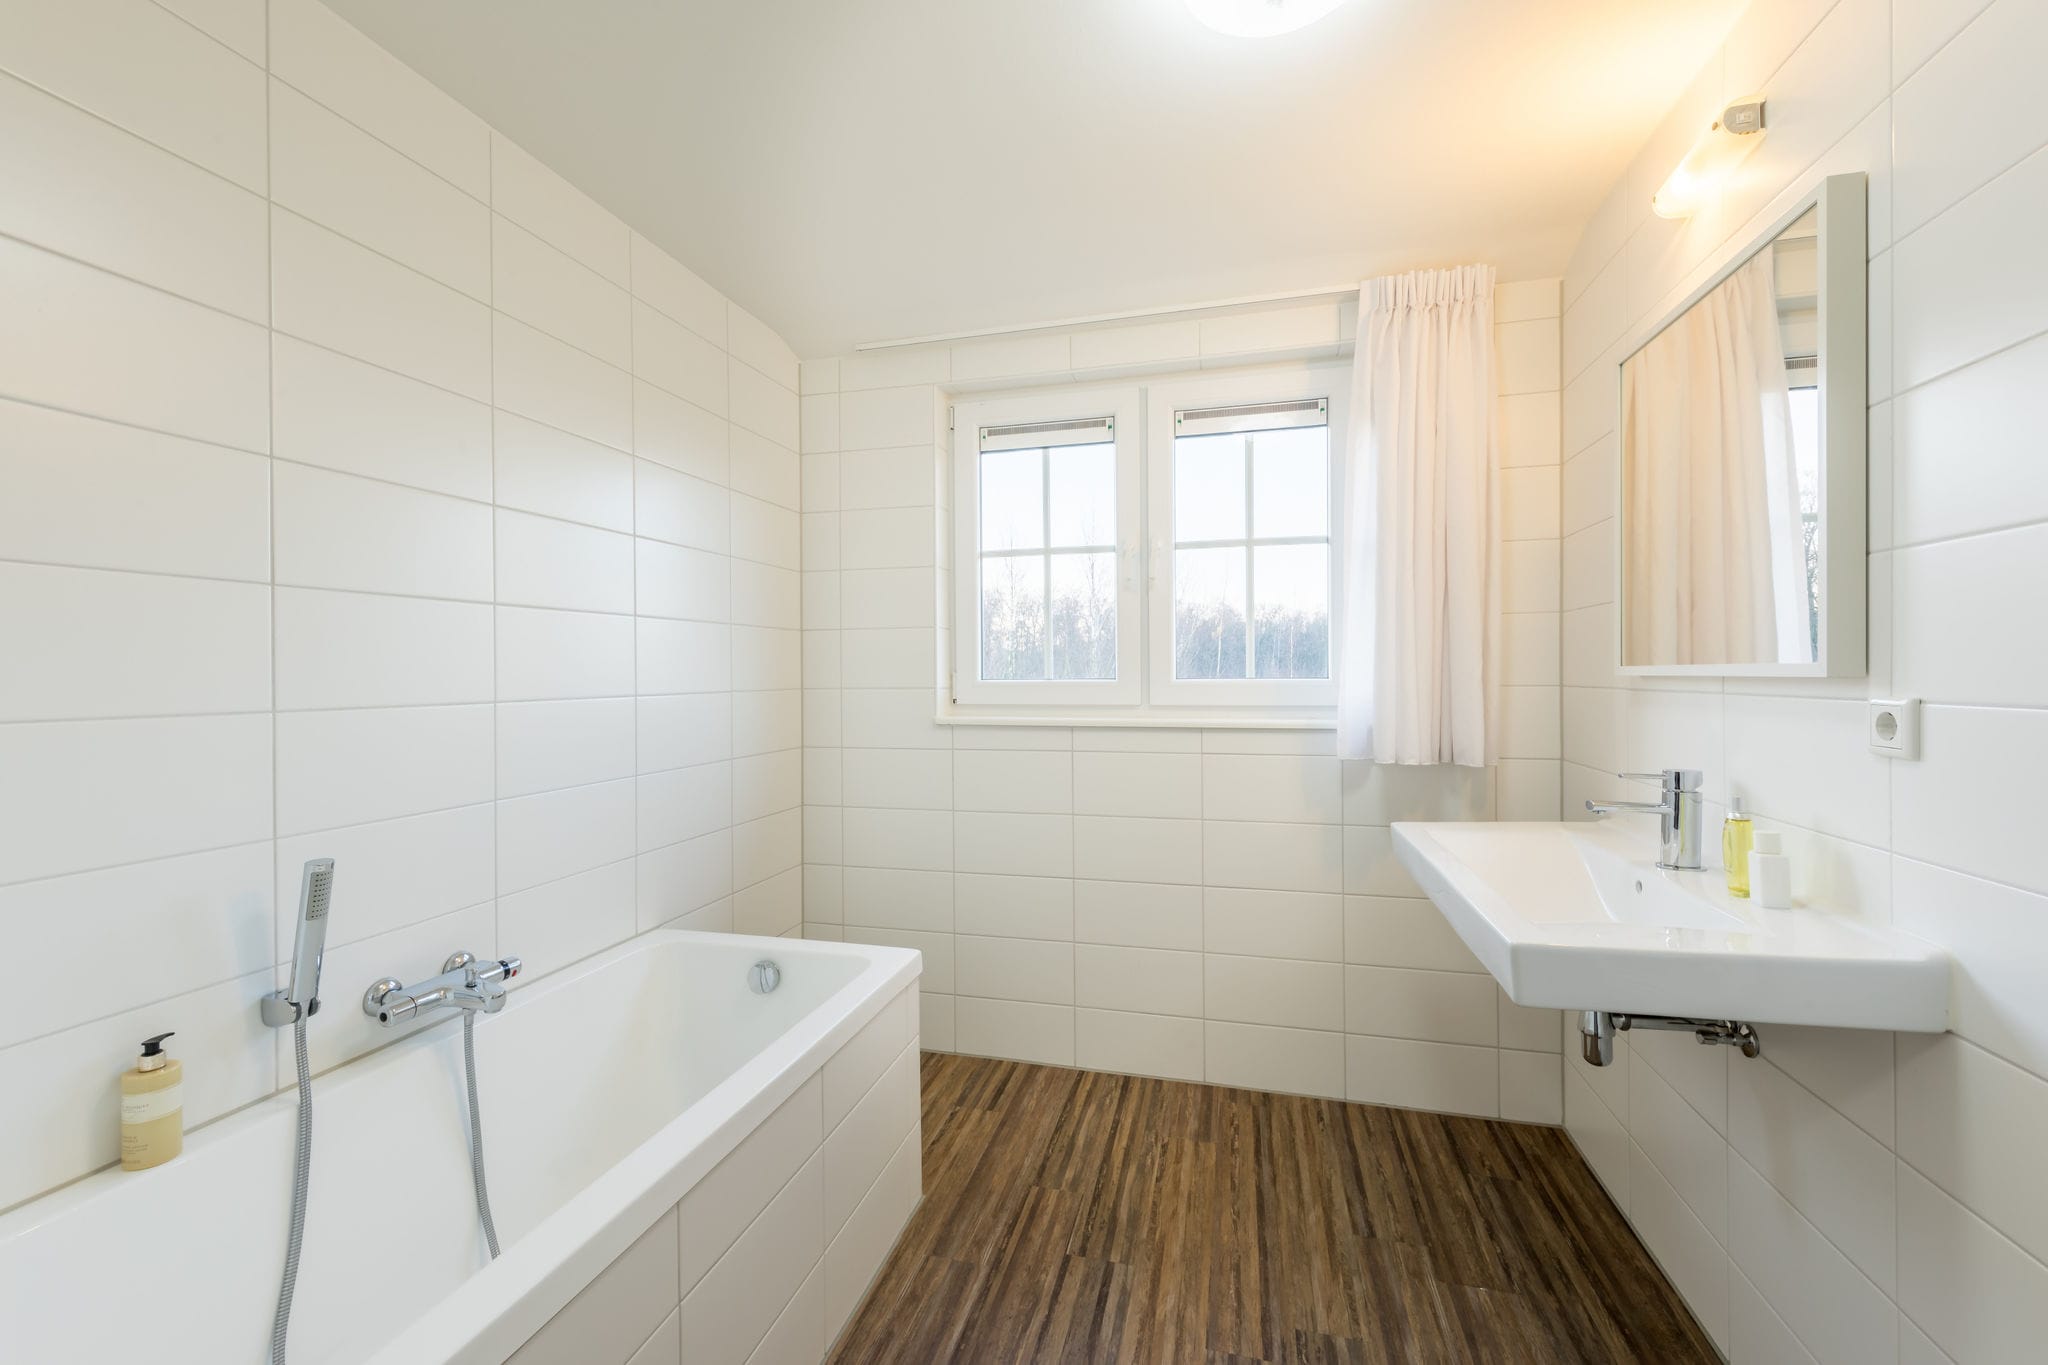 Luxurious detached villa with 3 bathrooms, in De Maasduinen